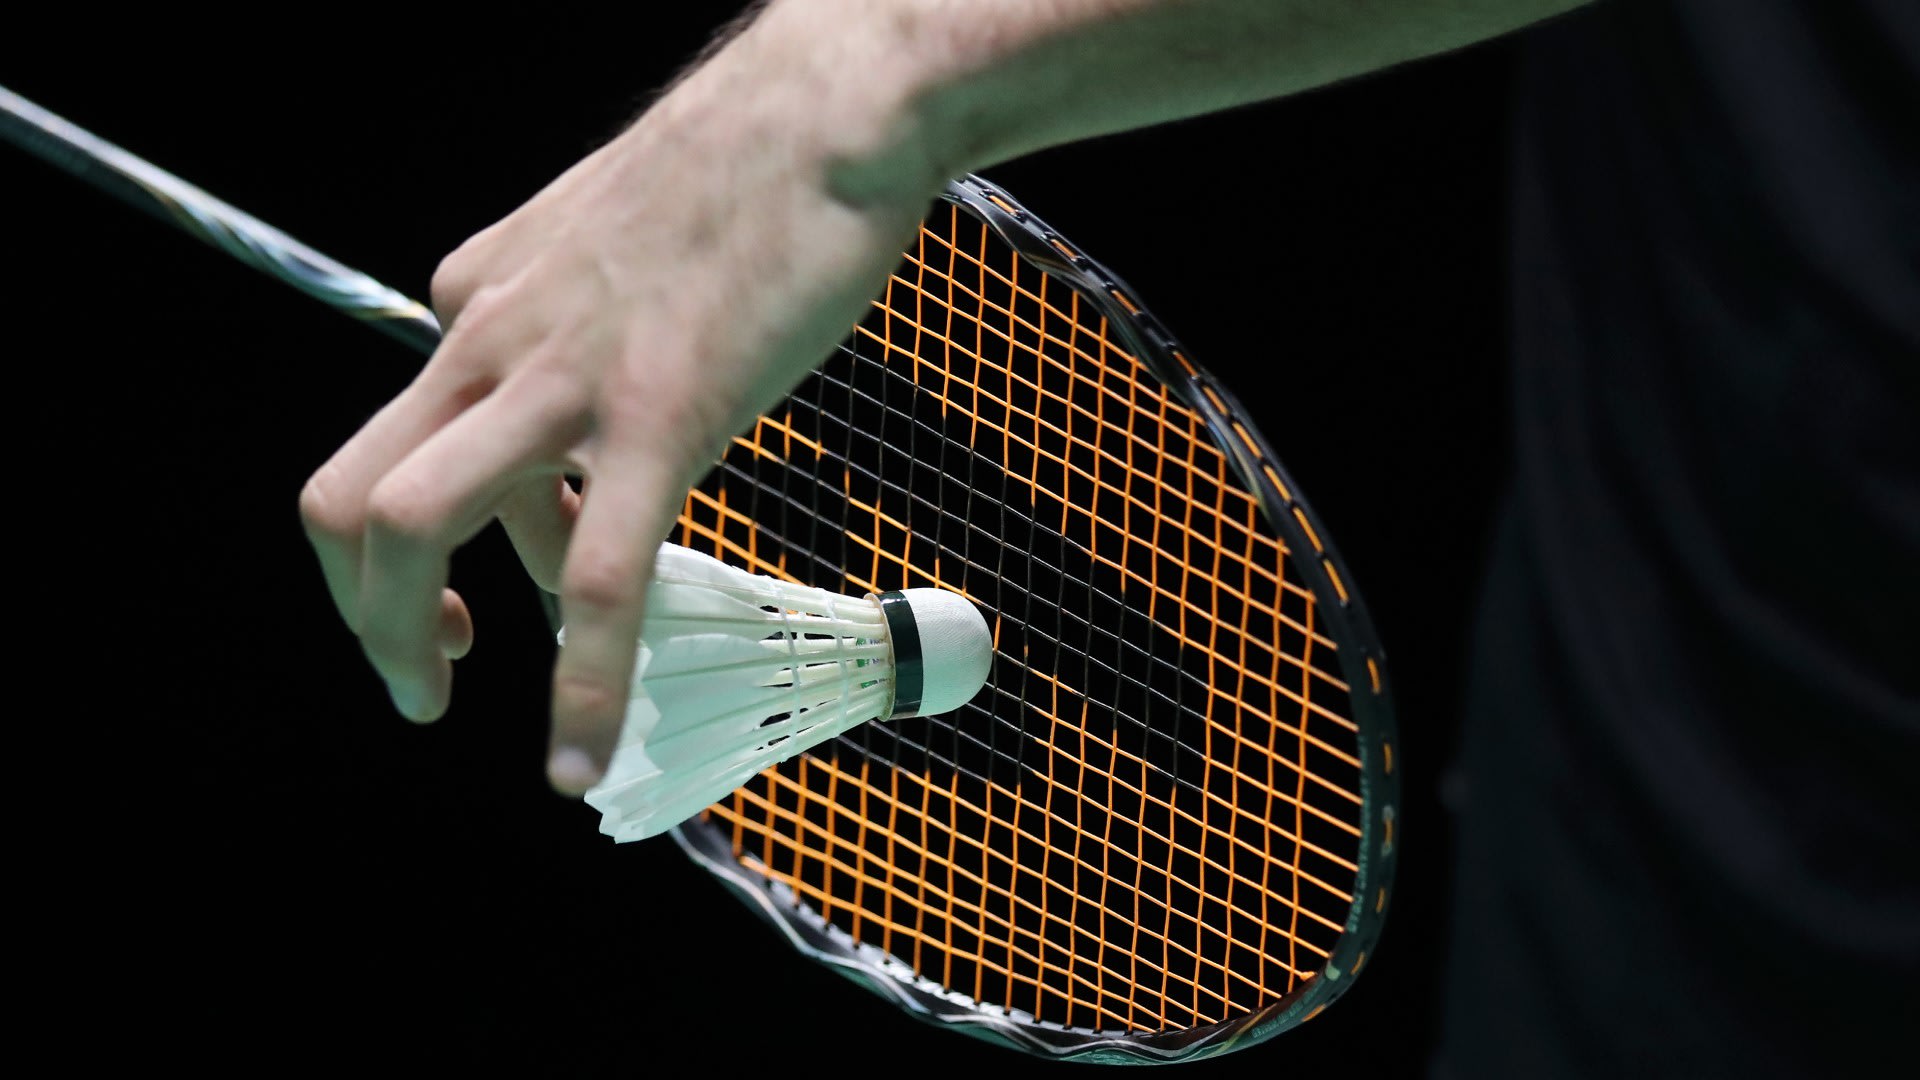 Australian Open badminton 2022 How to watch Lee Zii Jia in BWF action live